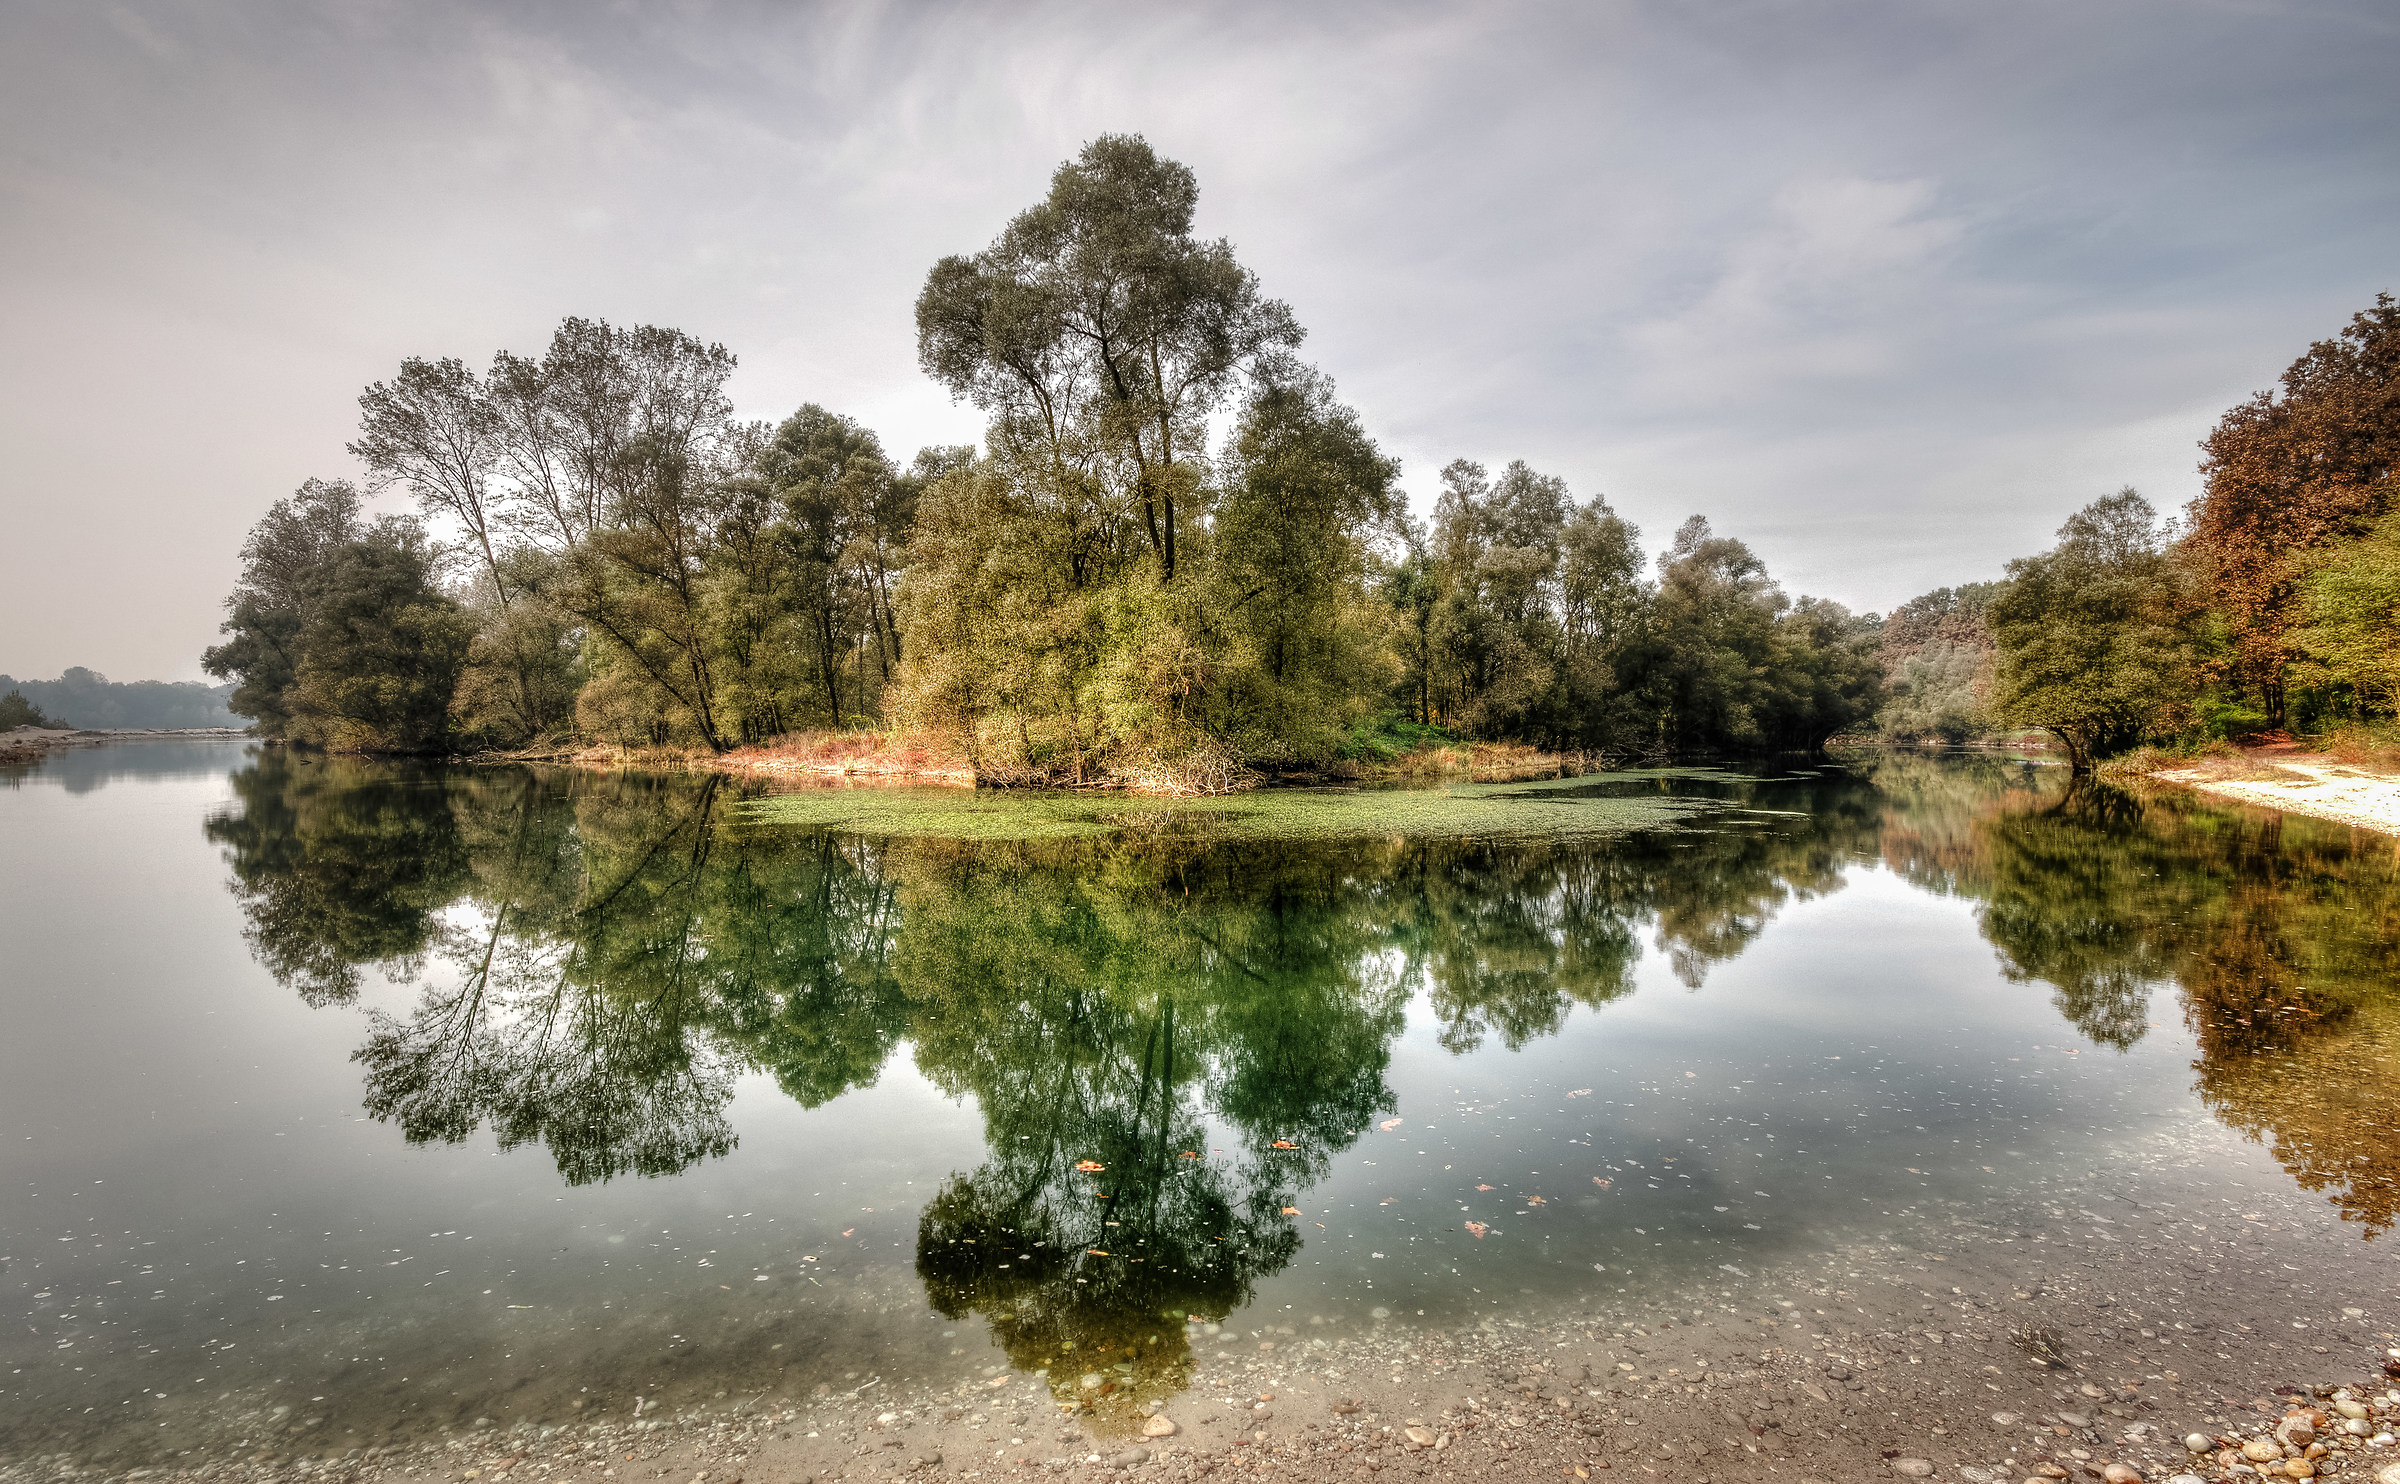 Ticino Park (Pv) Motta Visconti, Autumn Reflections...